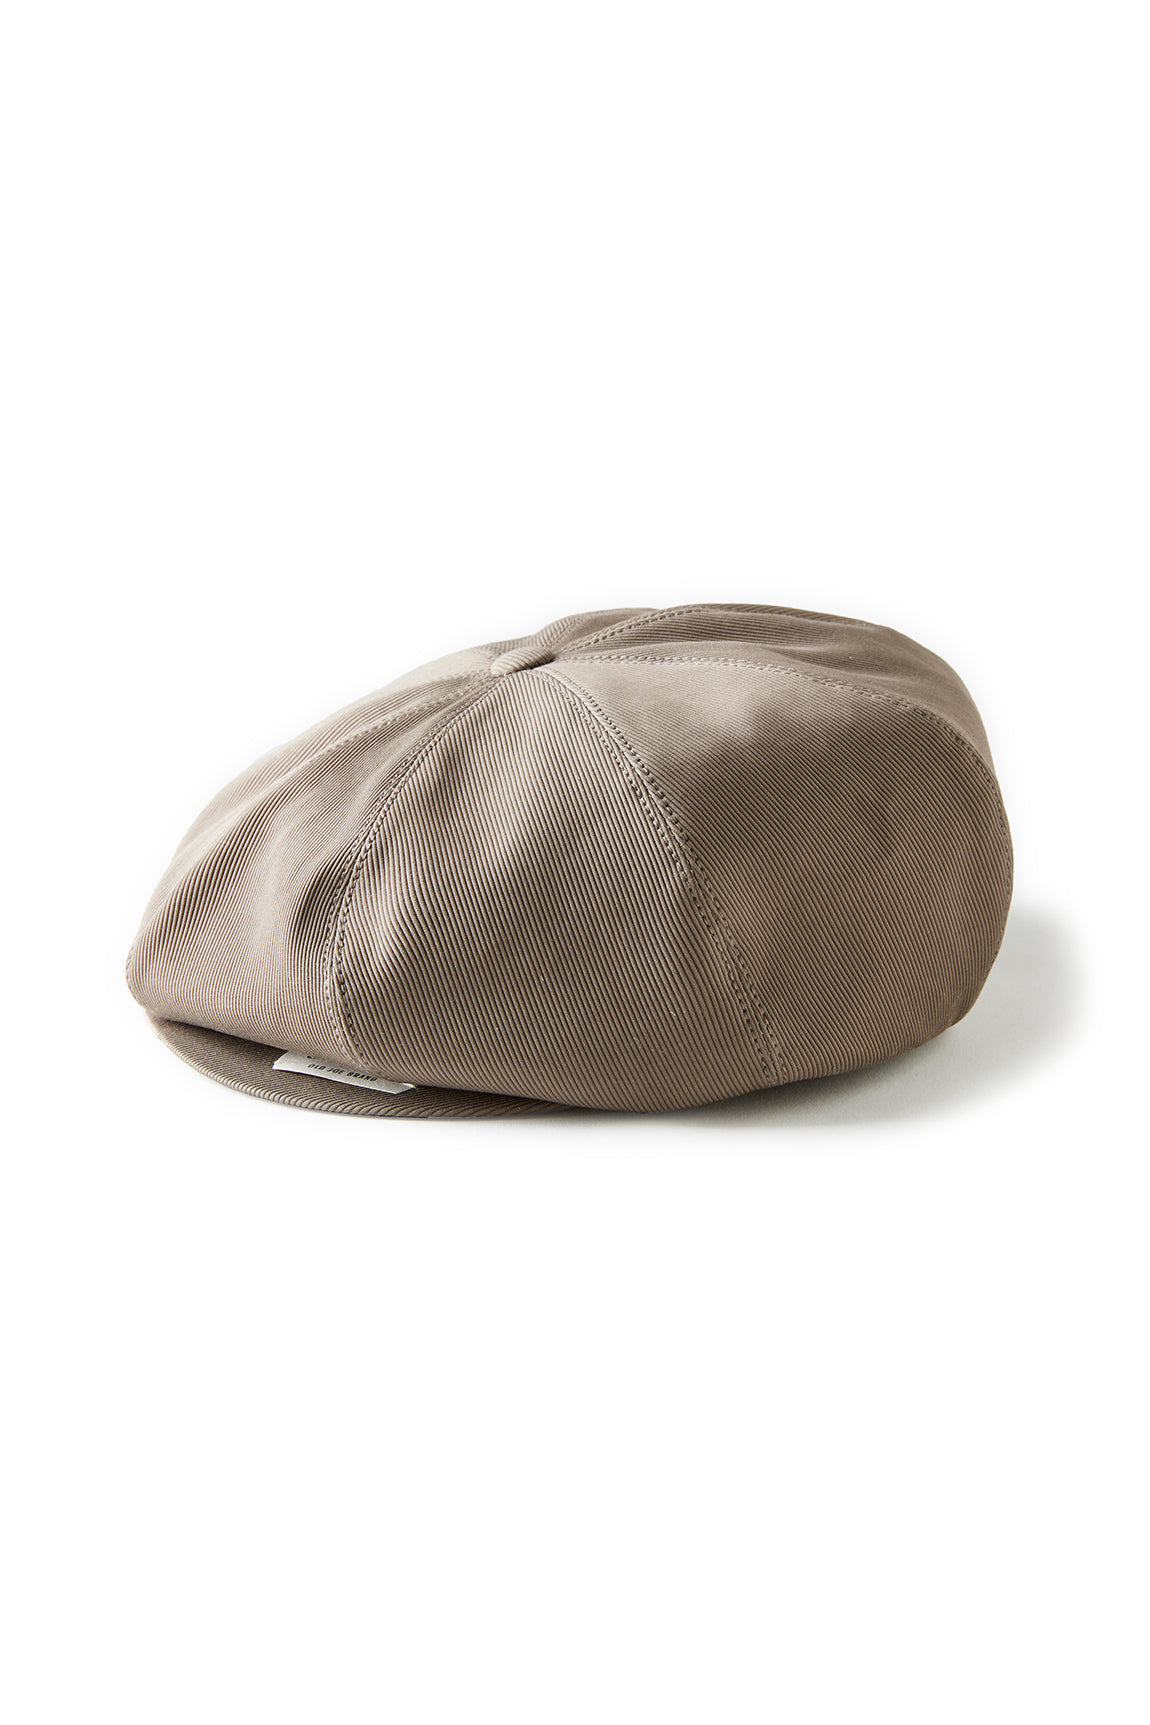 PEAKED CAP - 221OJ-HT01 – OLD JOE BRAND